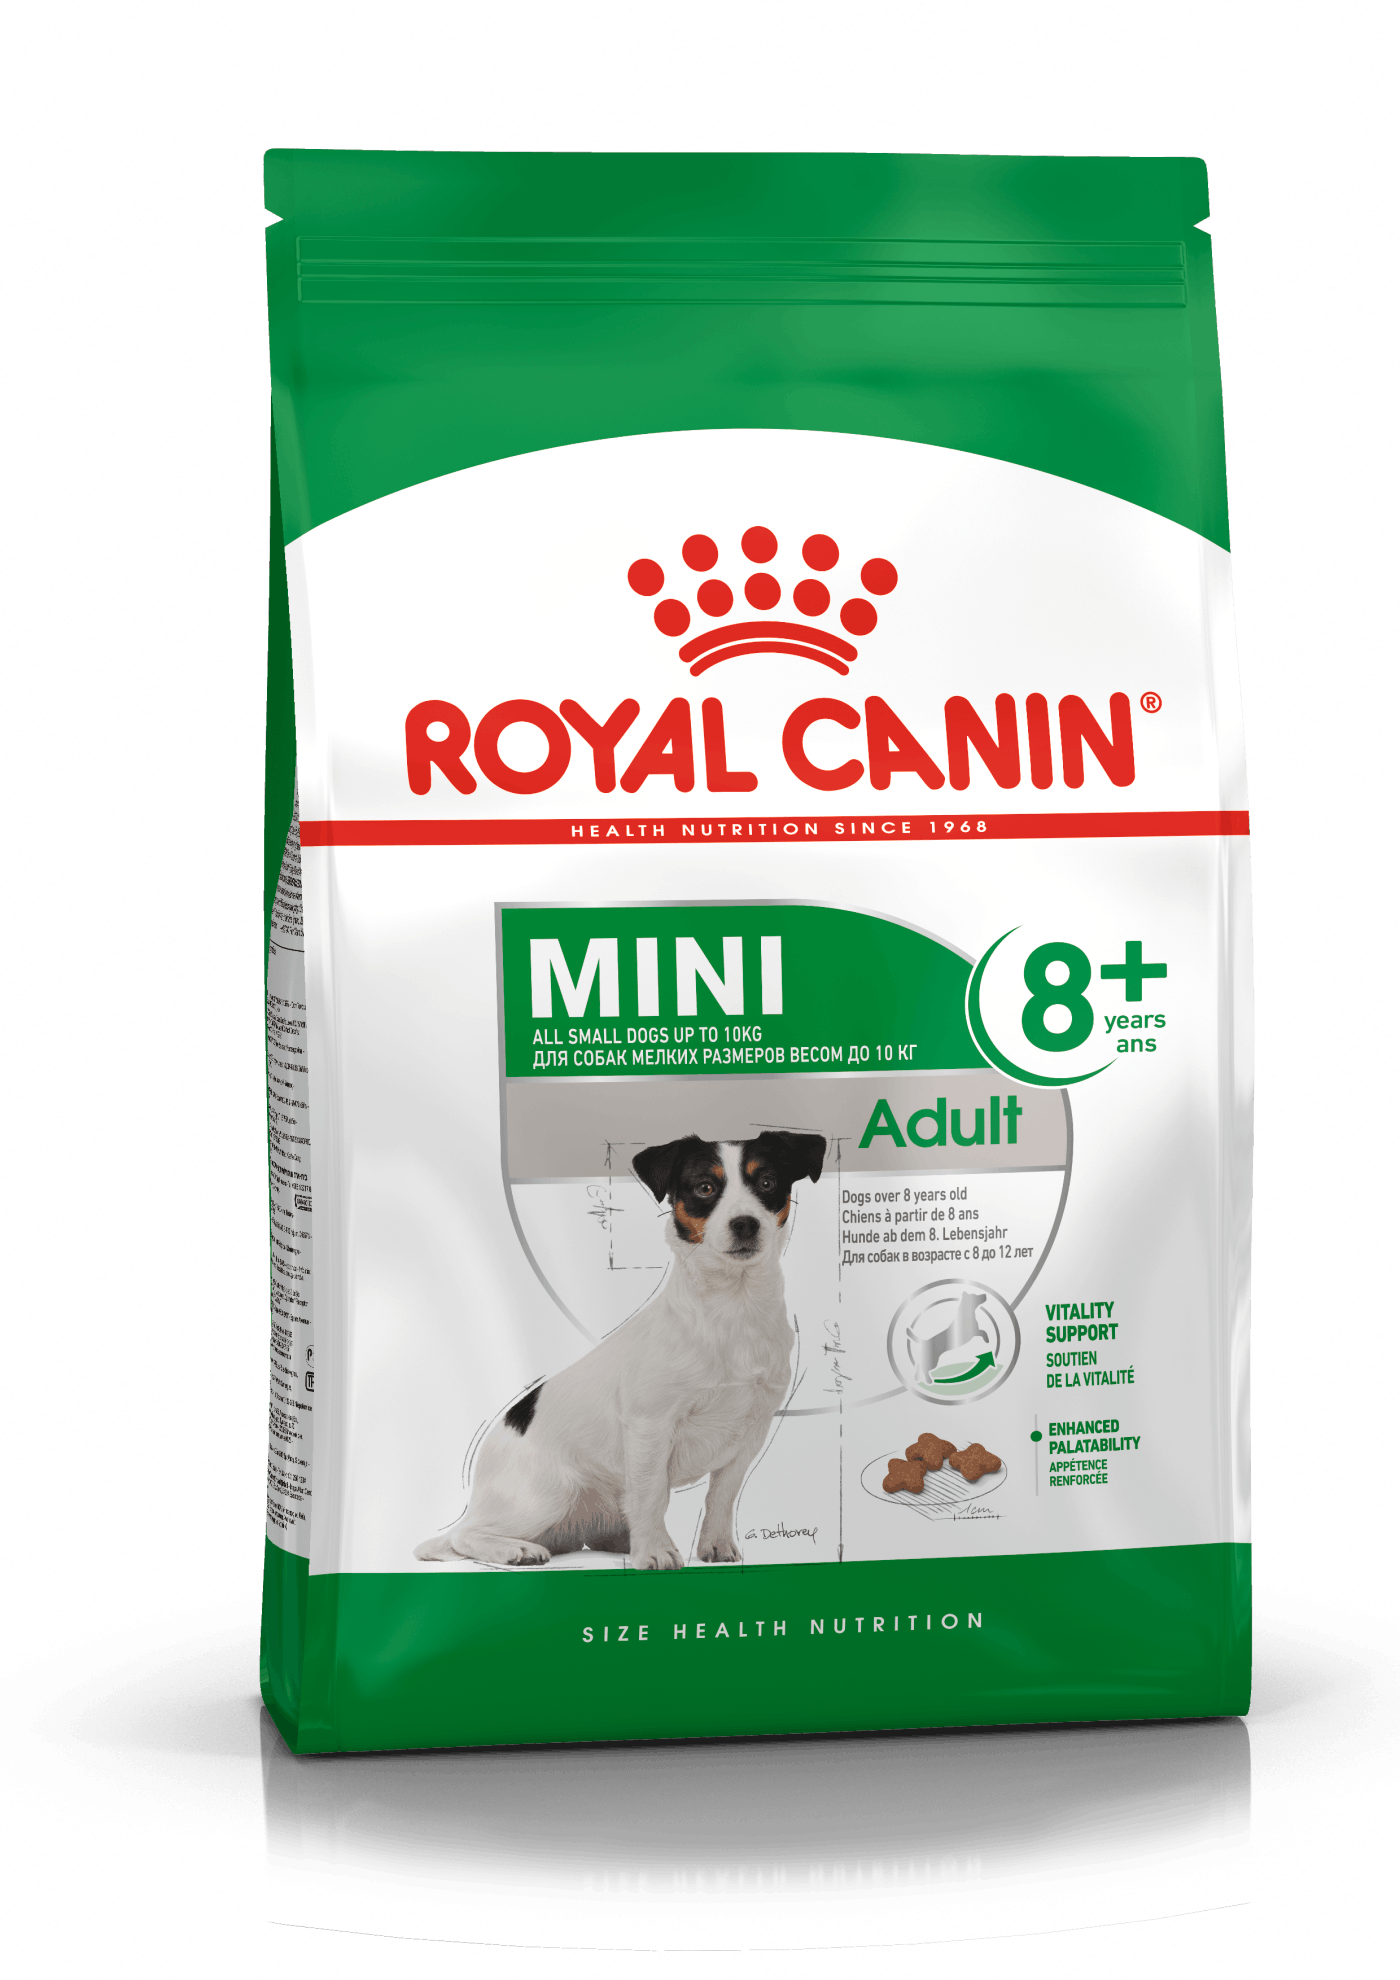 Royal Canin Mini Adult 8+. Hunde over 8 år.